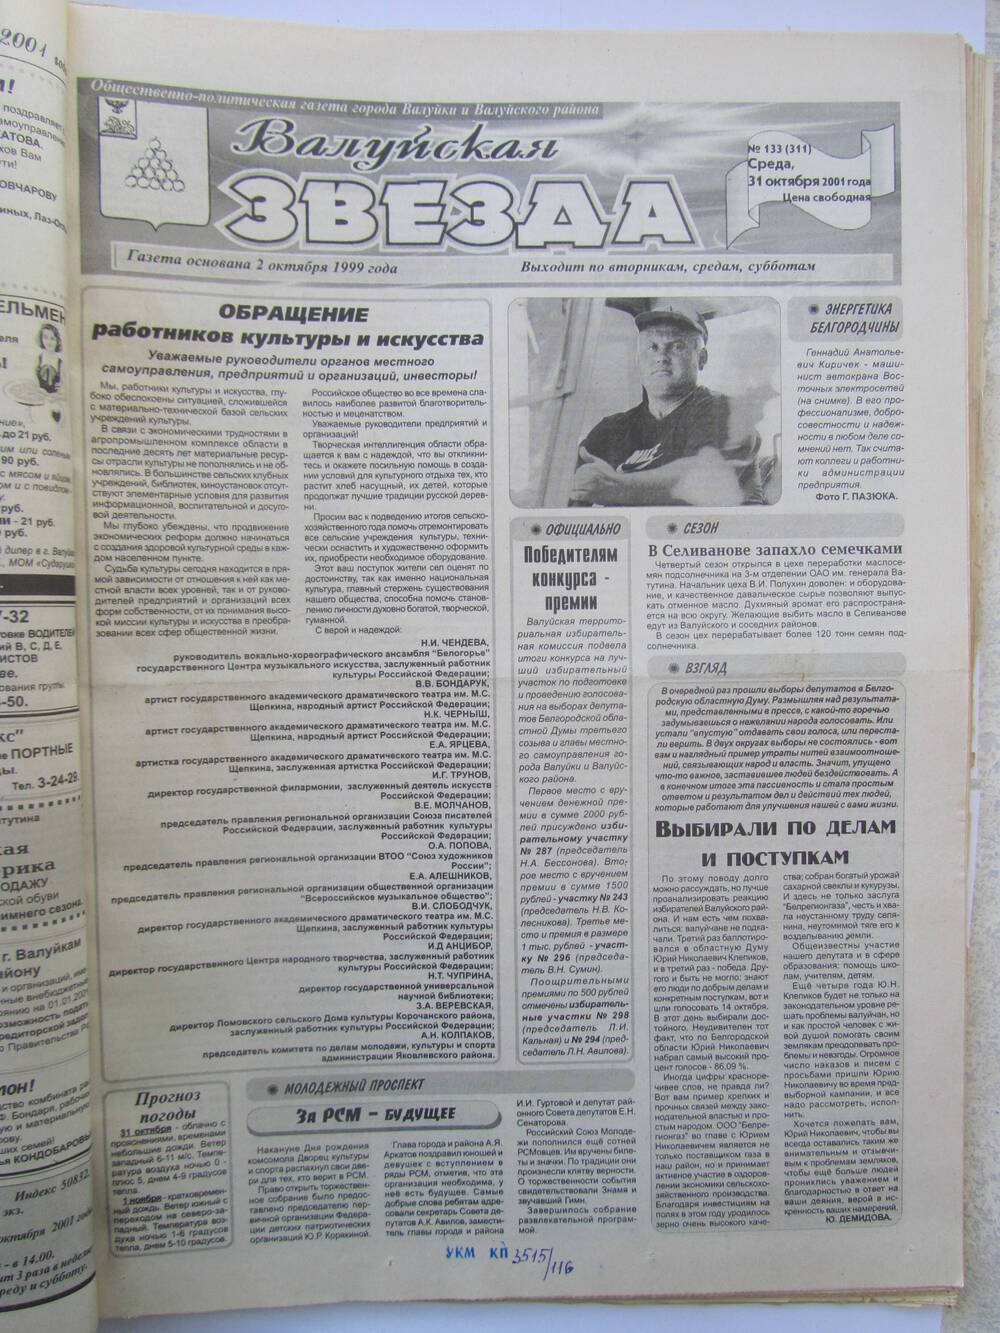 Газета Валуйская звезда №133 от 31.10.2001 г